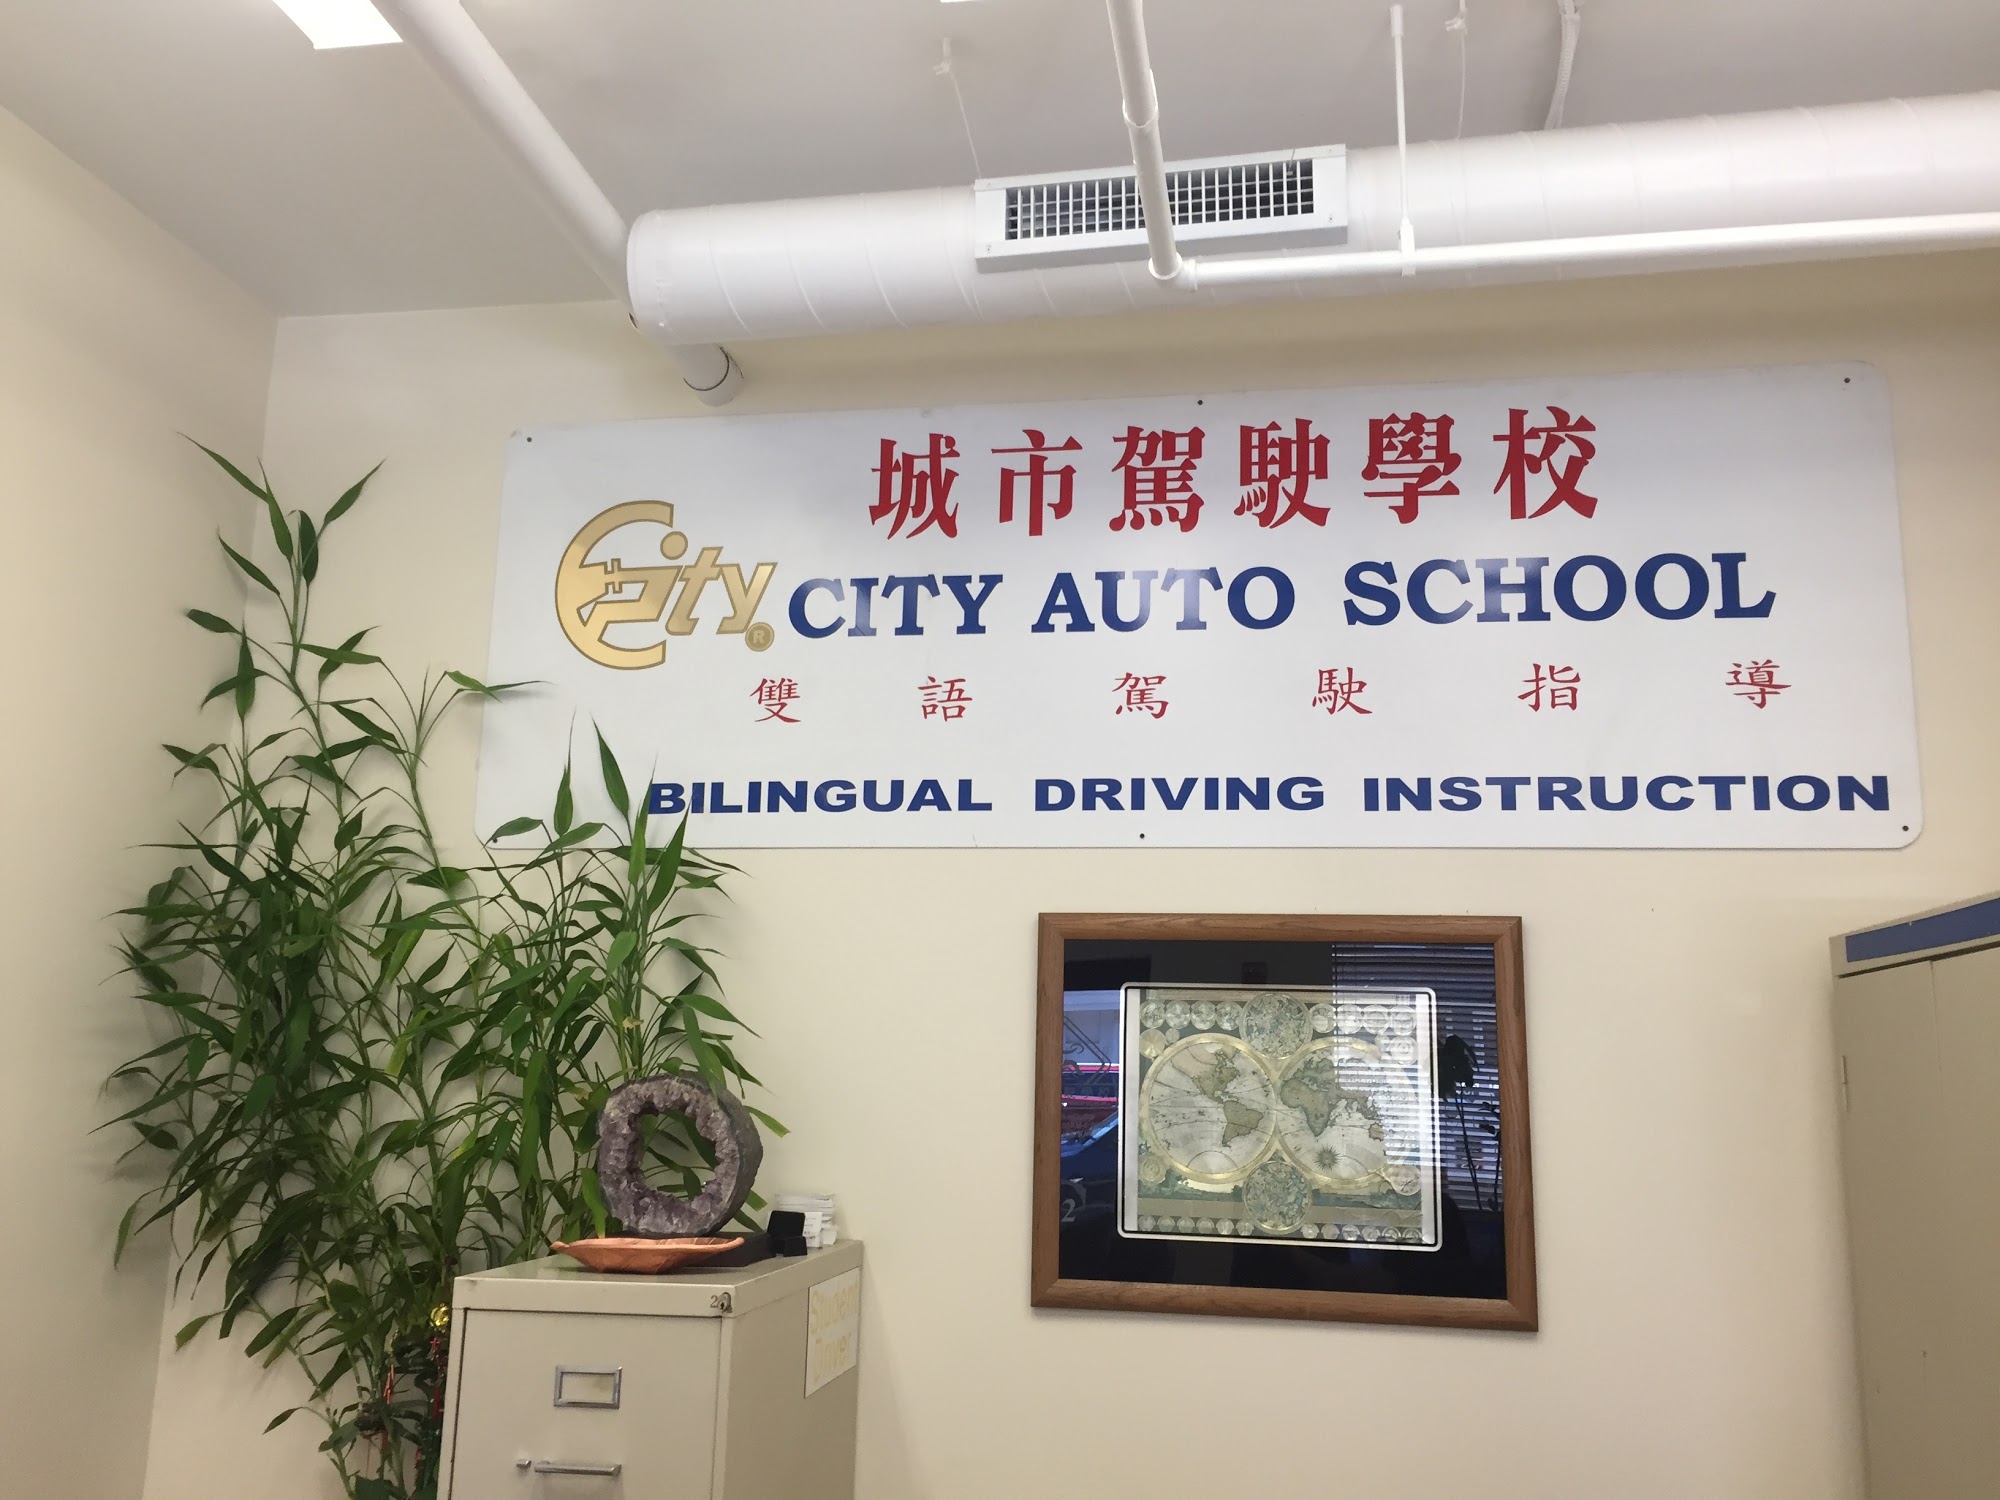 City Auto School